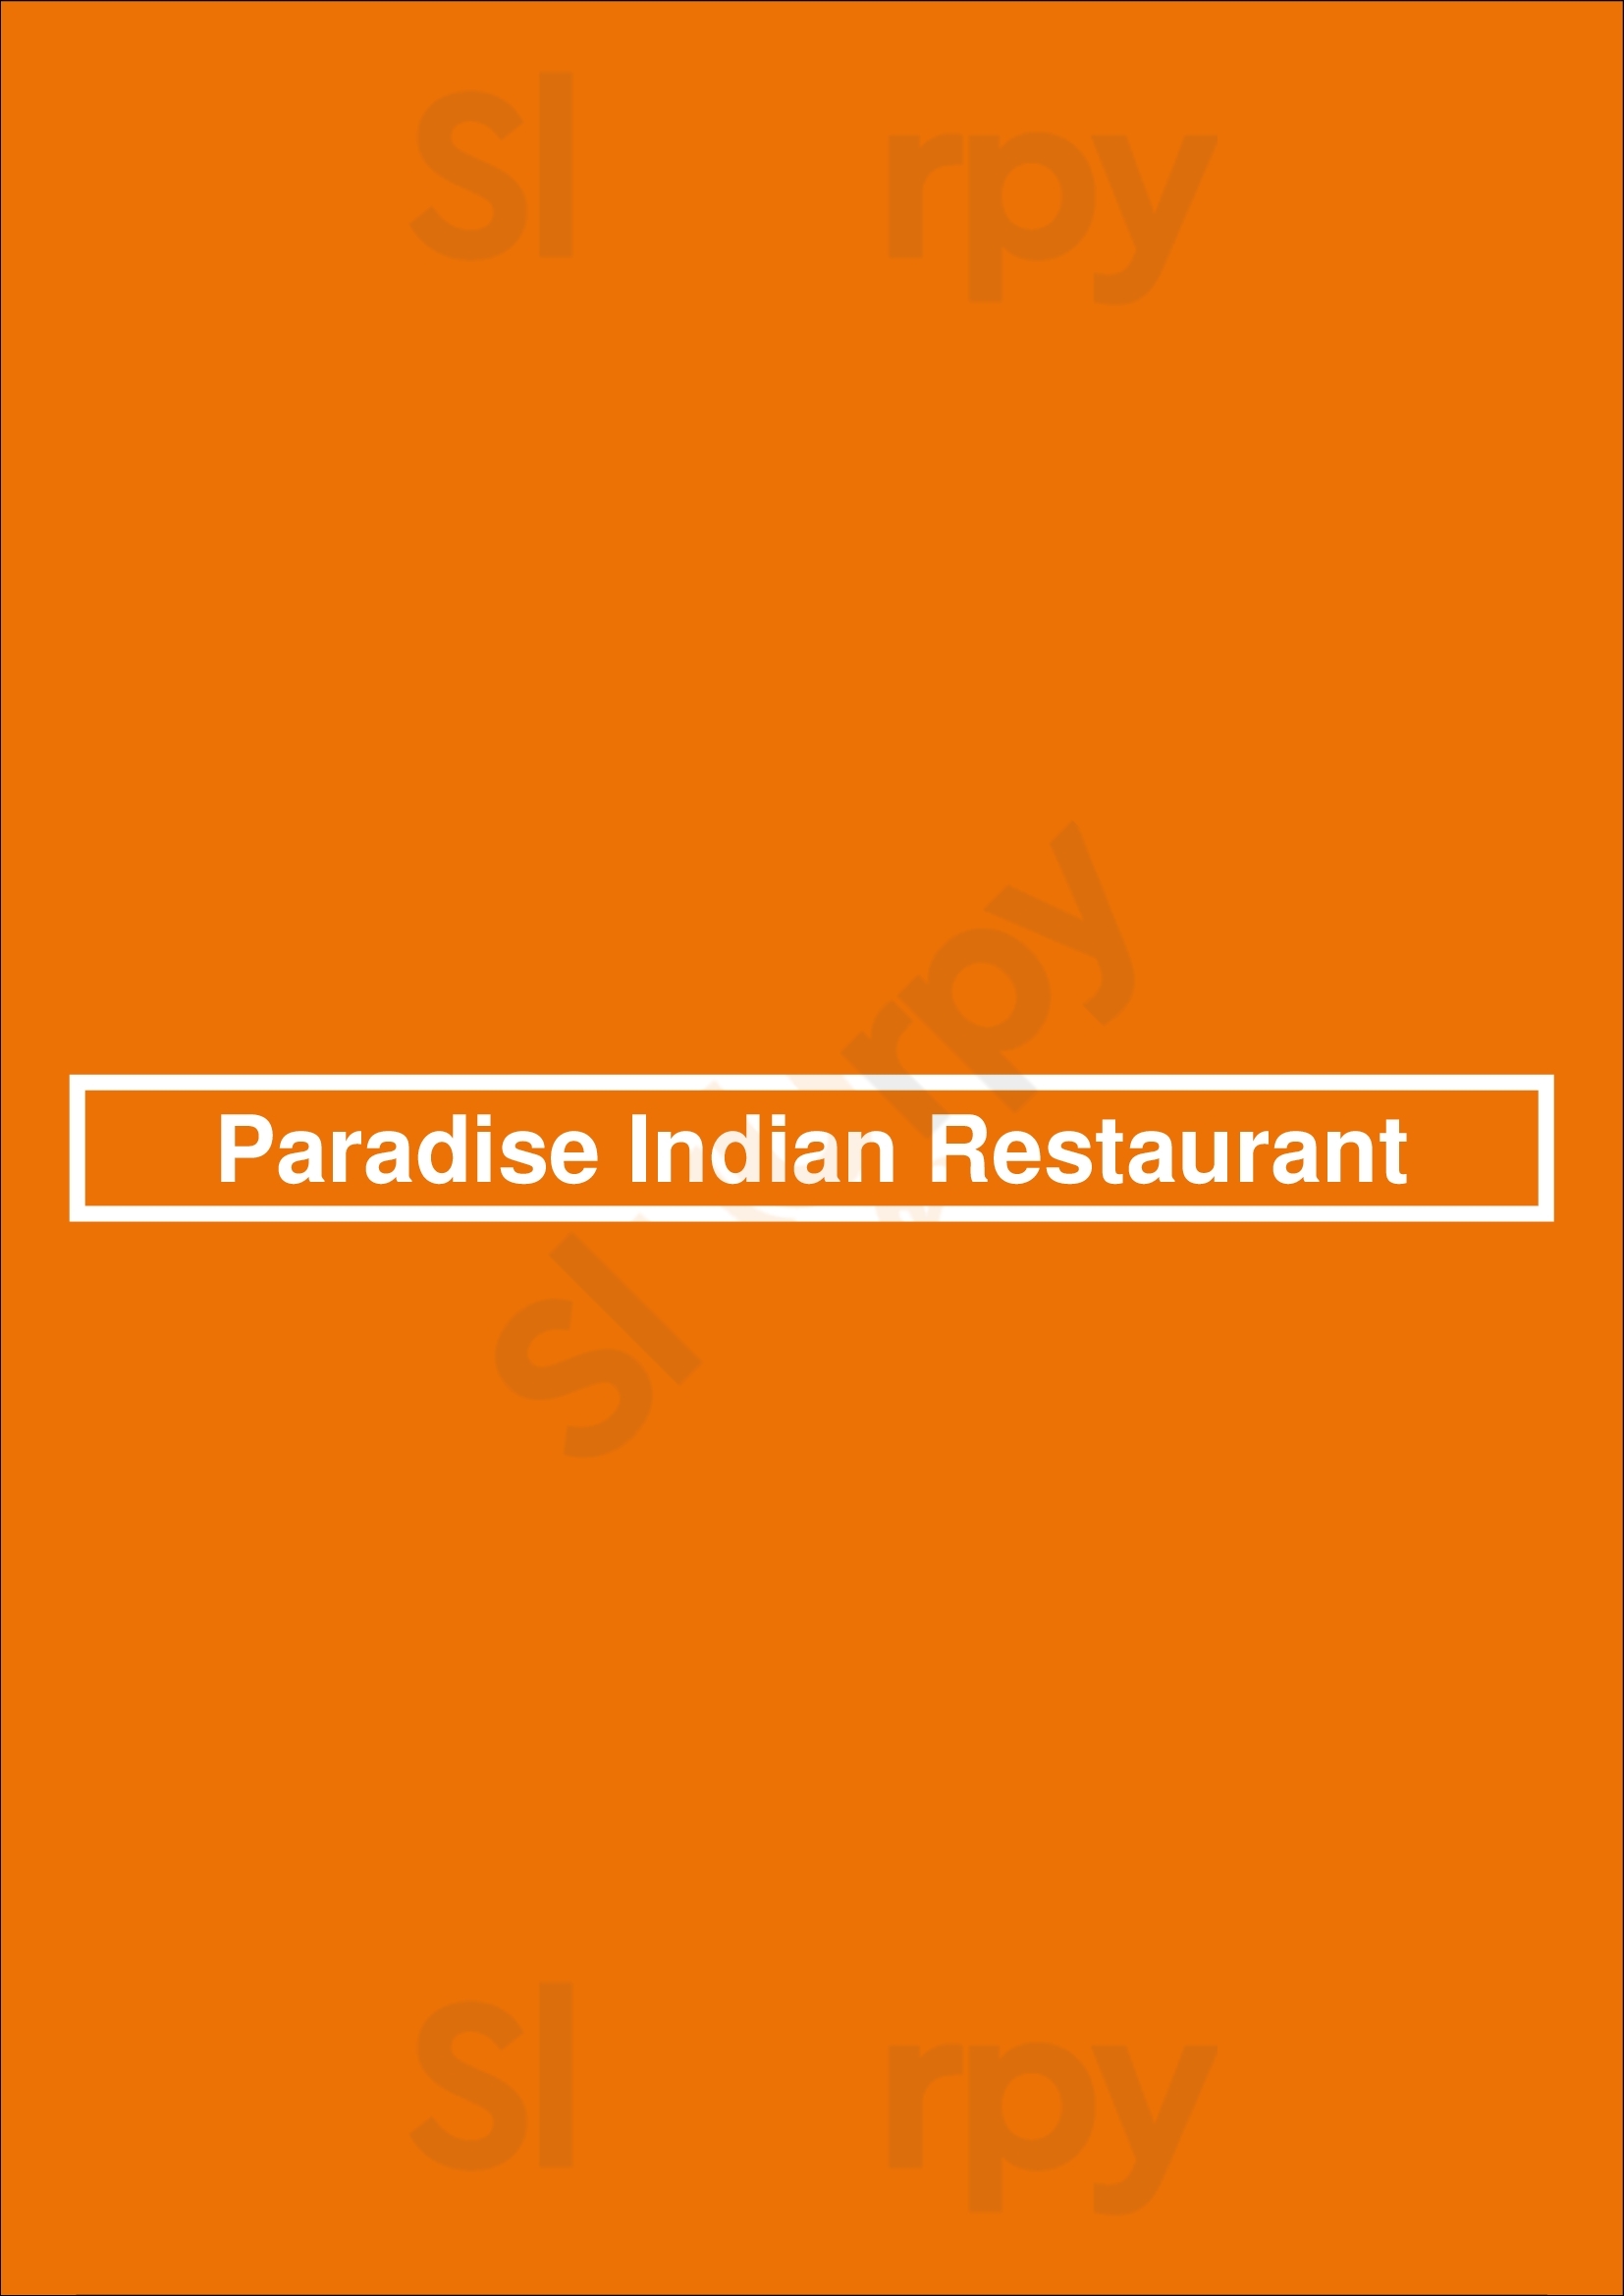 King Palace Indian Restaurant Carvoeiro Menu - 1